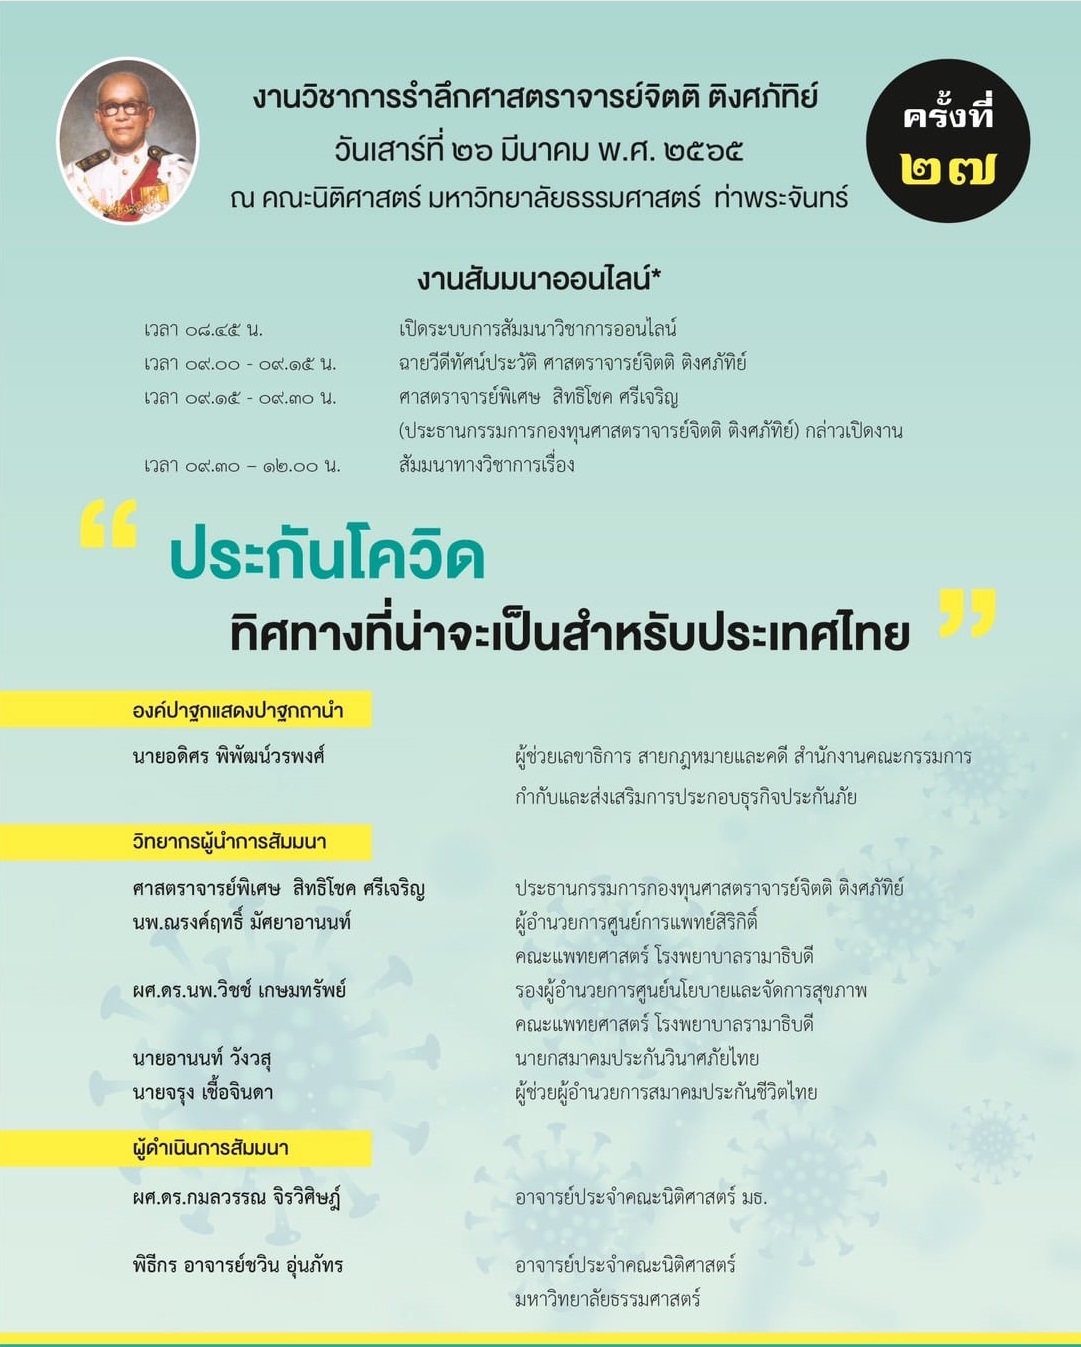 สรุปสาระสำคัญจากสัมมนาวิชาการ “ประกันโควิด ทิศทางที่น่าจะเป็นสำหรับประเทศไทย” จากงานวิชาการรำลึกศาสตราจารย์จิตติ ติงศภัทิย์